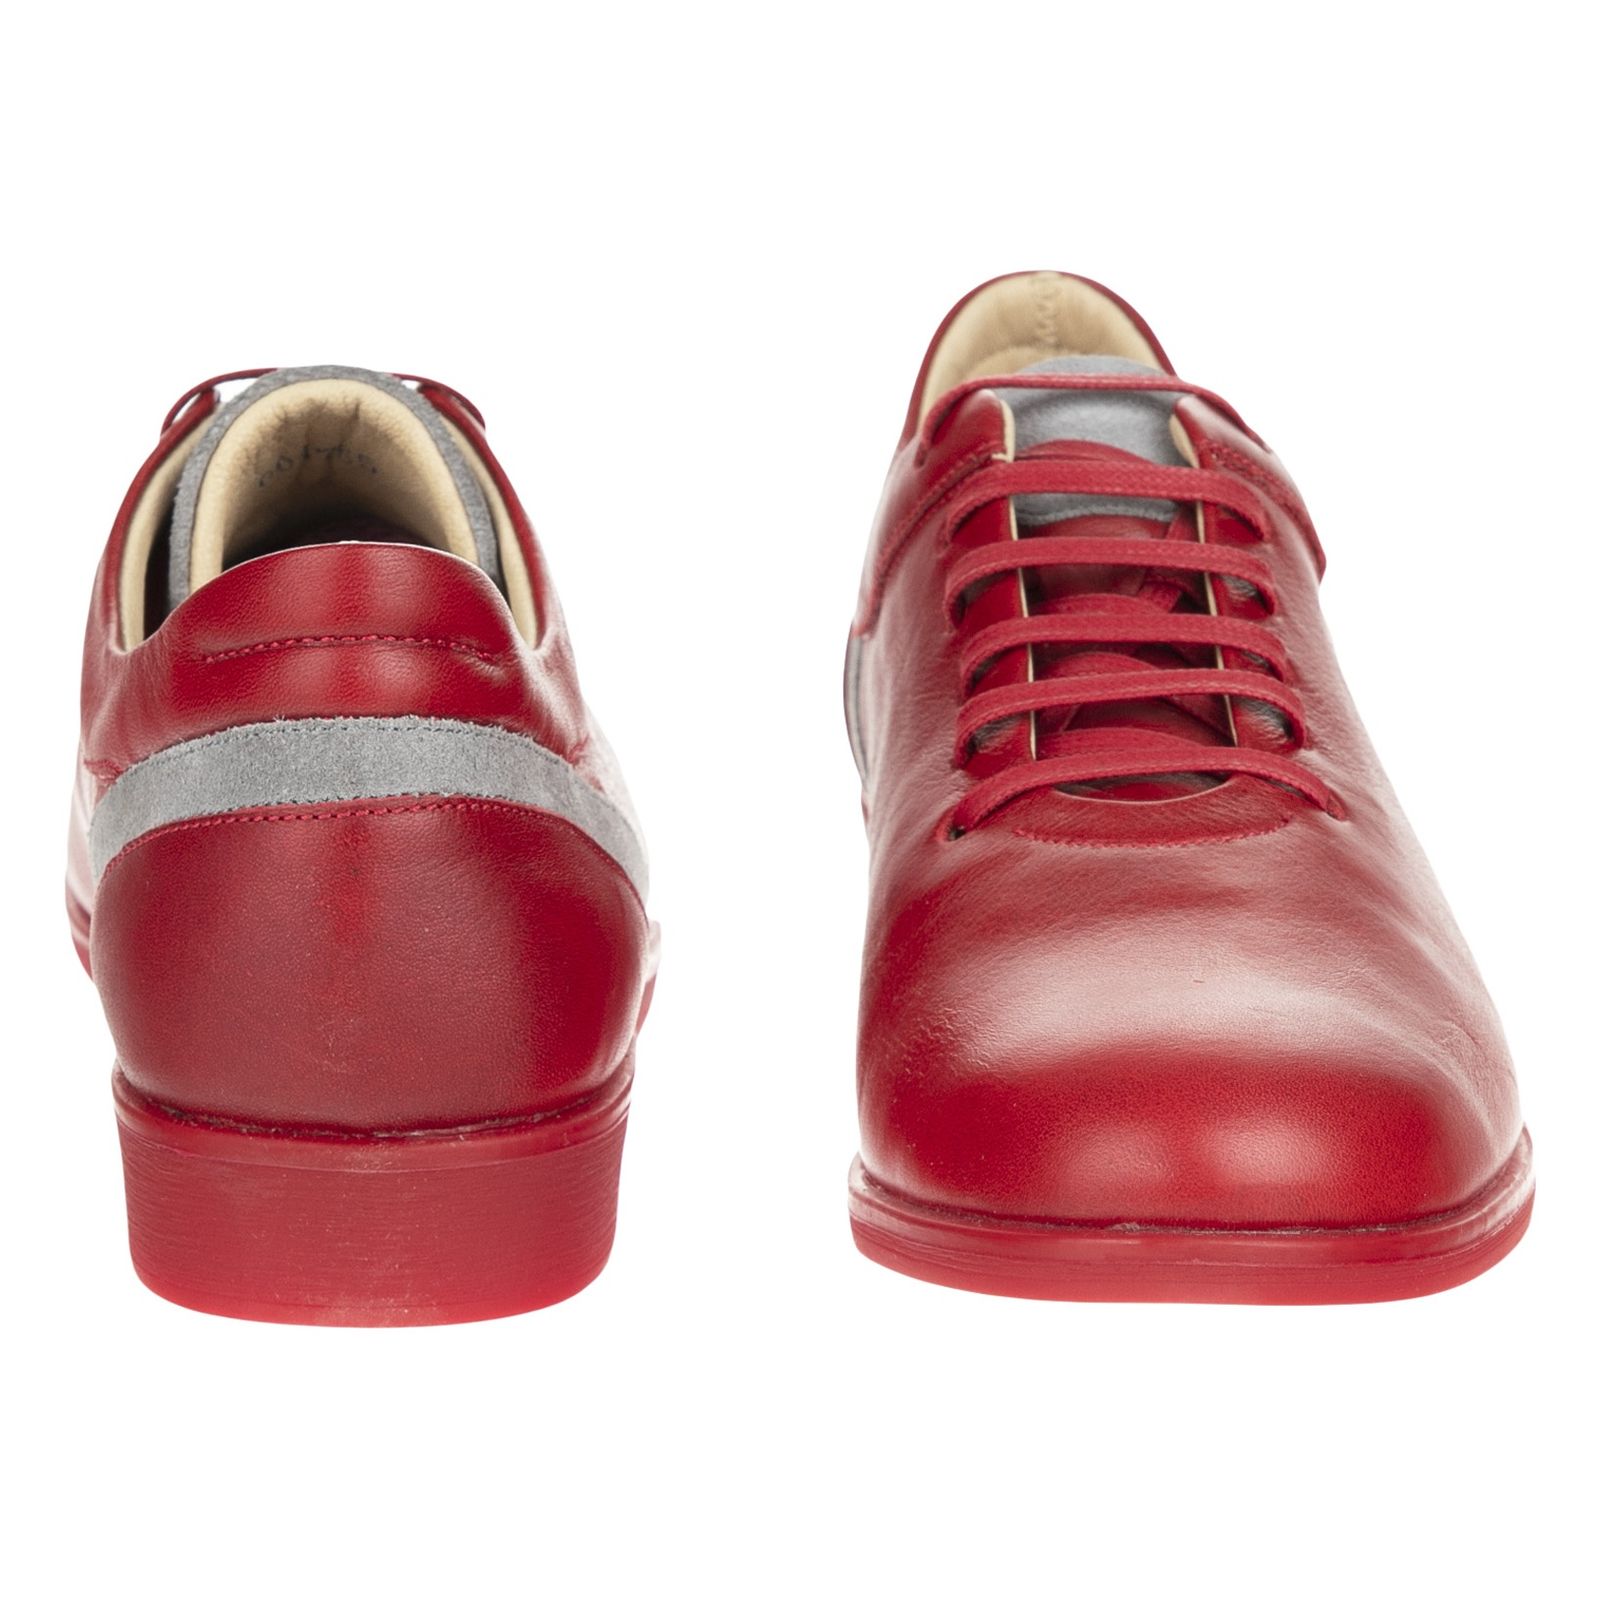 کفش روزمره زنانه برتونیکس مدل 960-24 - قرمز - 5